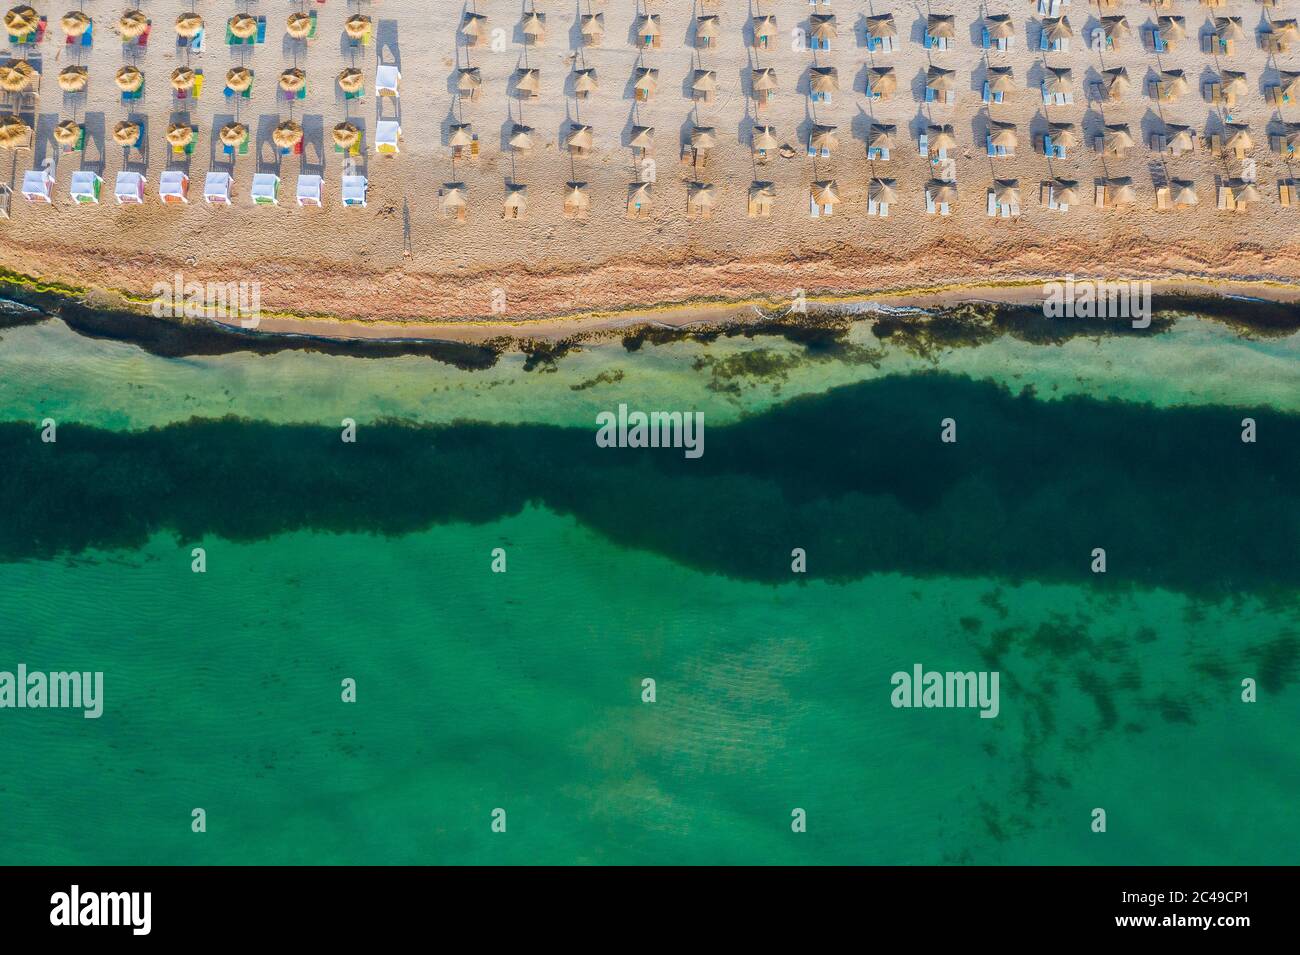 Vama Veche, Roumanie. Vue aérienne de la plage de Vama Veche avec parasols sur la mer Noire. Banque D'Images